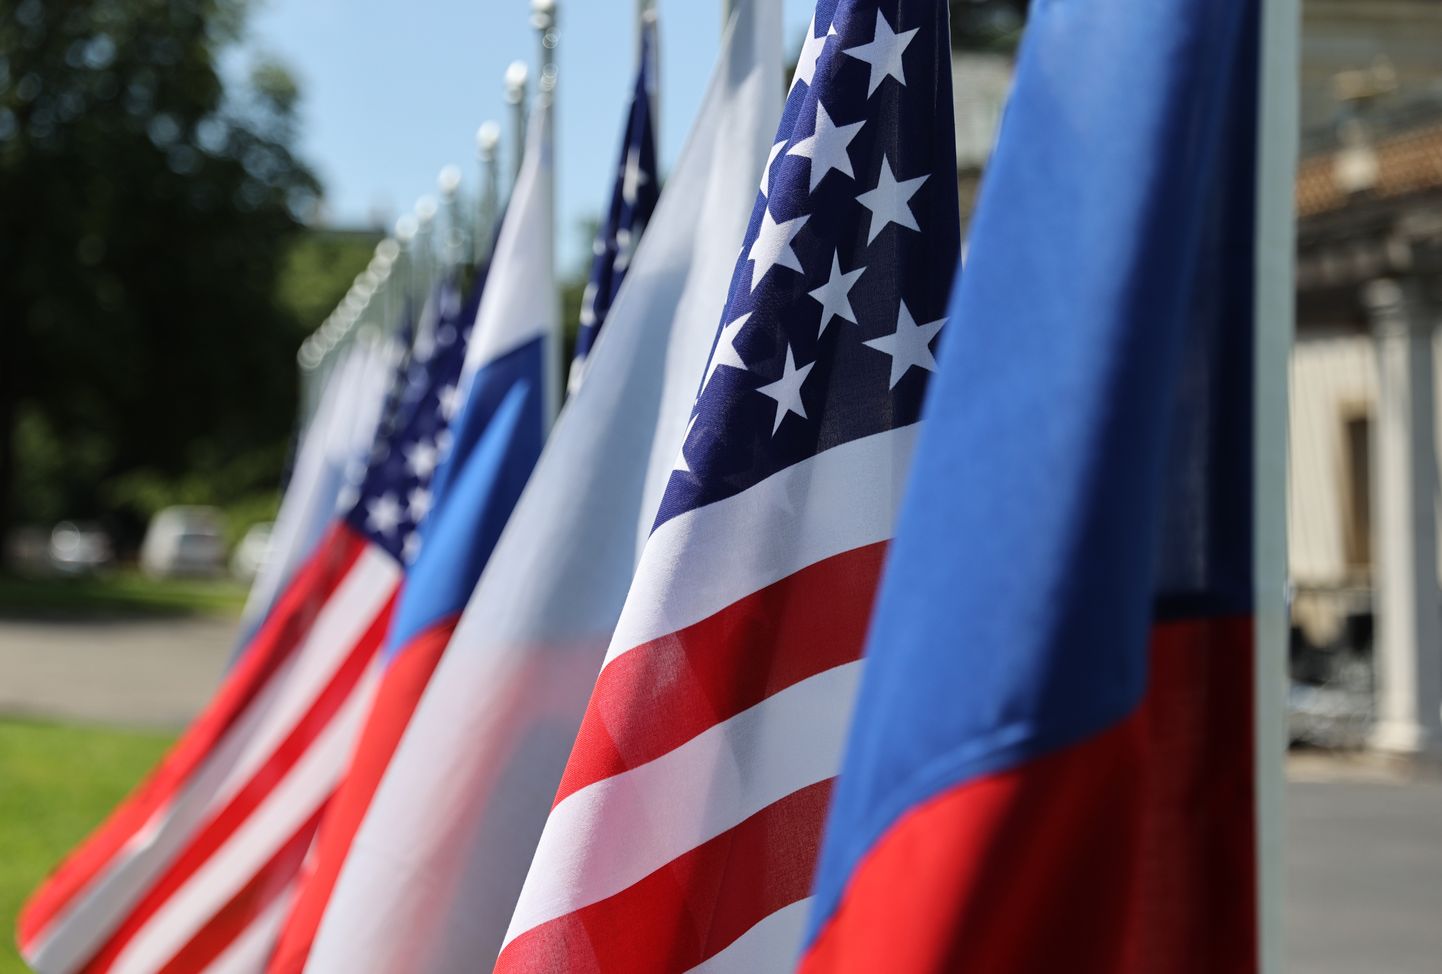 Флаги России и США.